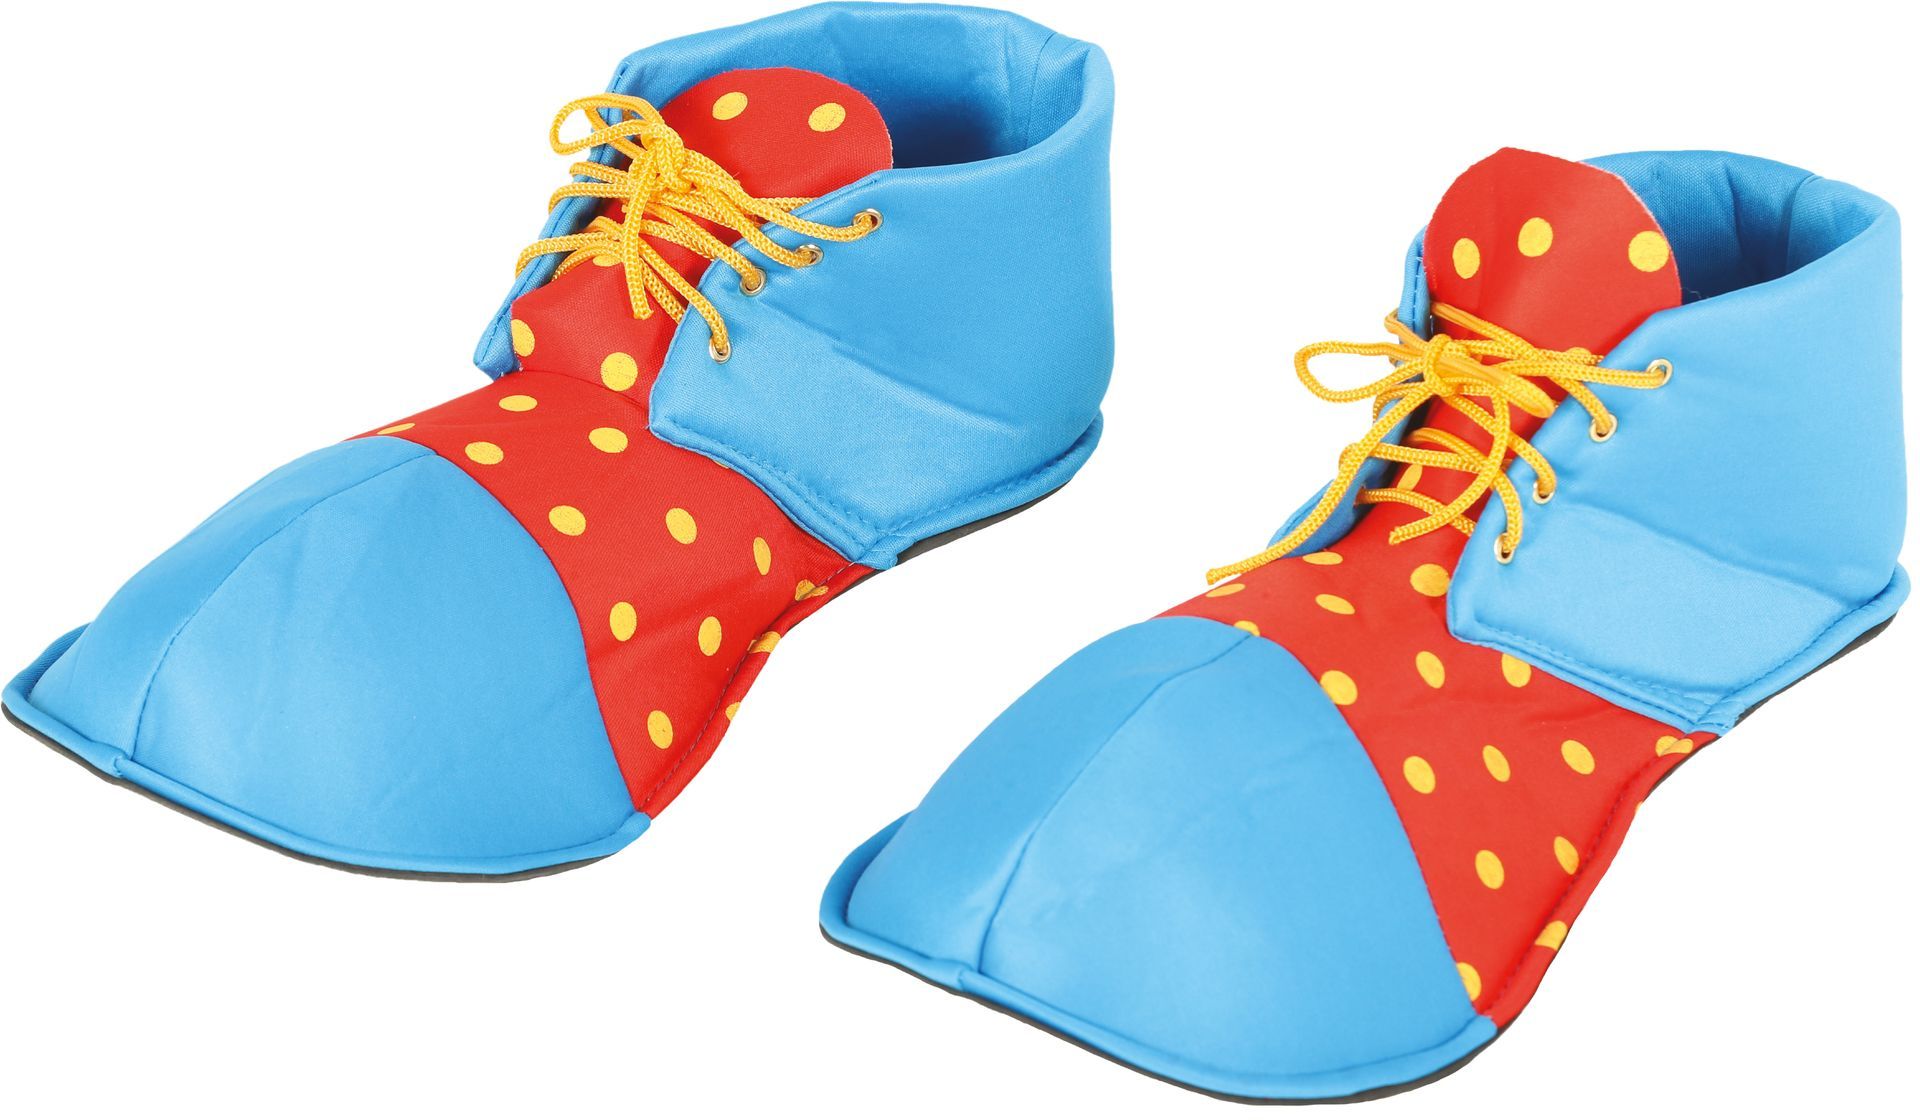 Grote clown schoenen blauw